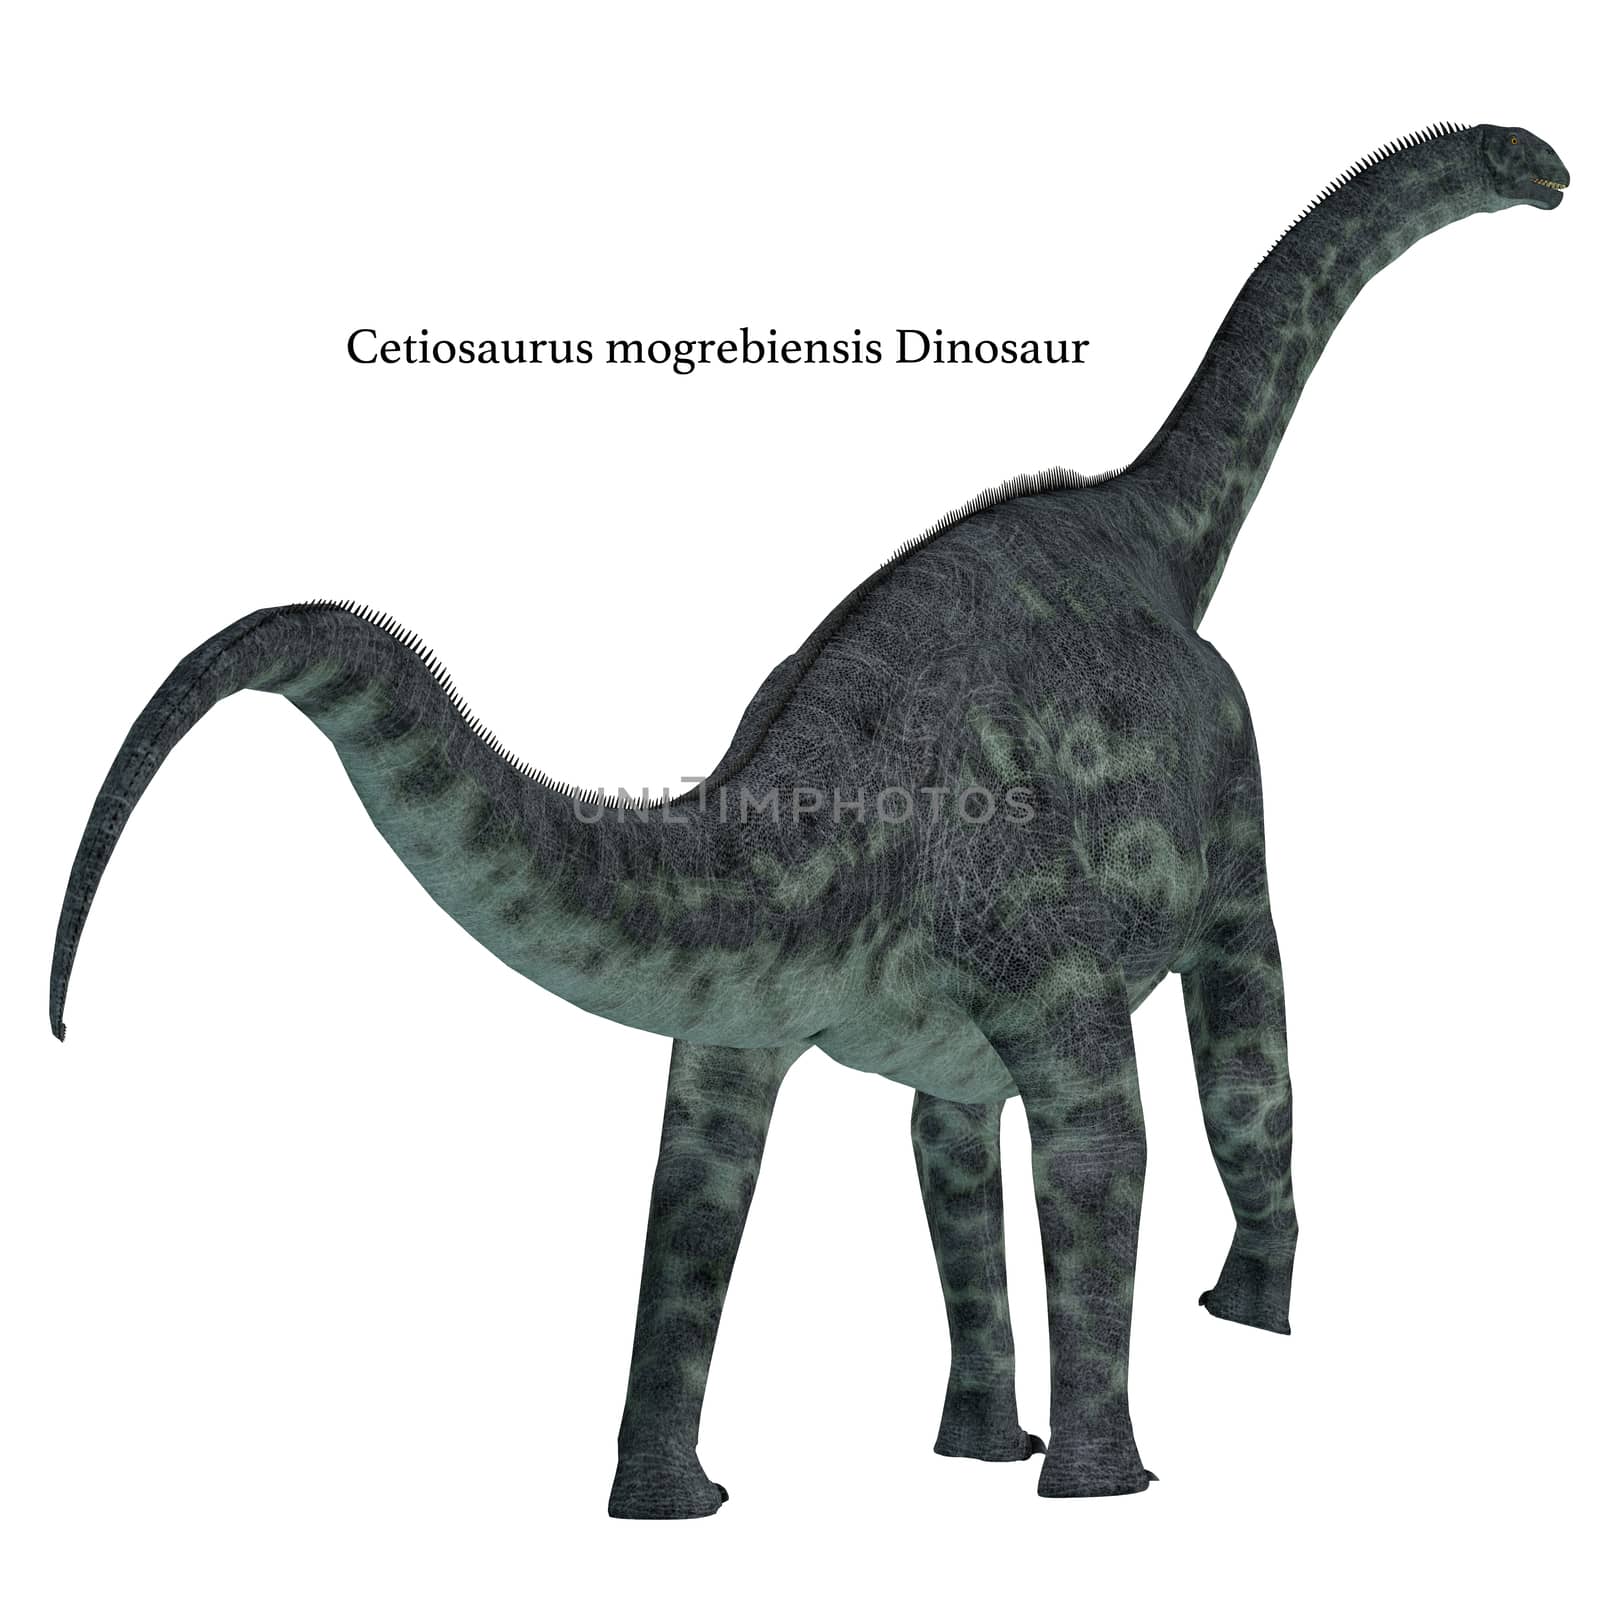 Cetiosaurus Dinosaur Tail by Catmando